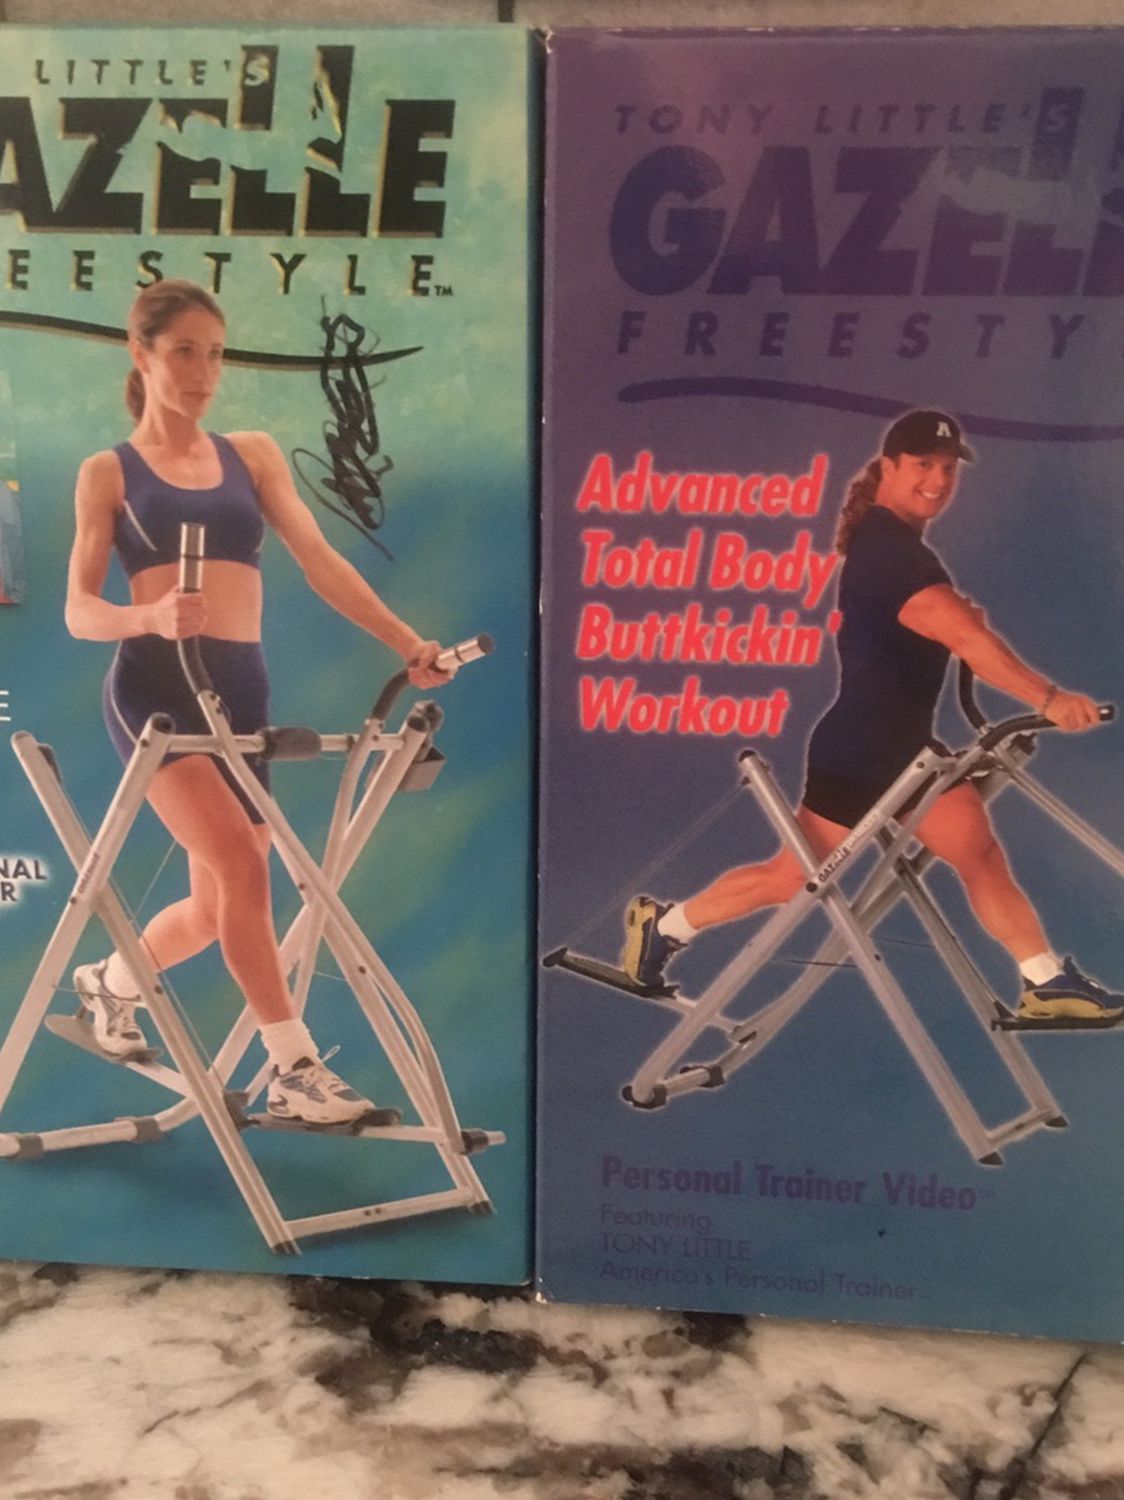 Original Tony Little  “Gazelle “ Exerciser